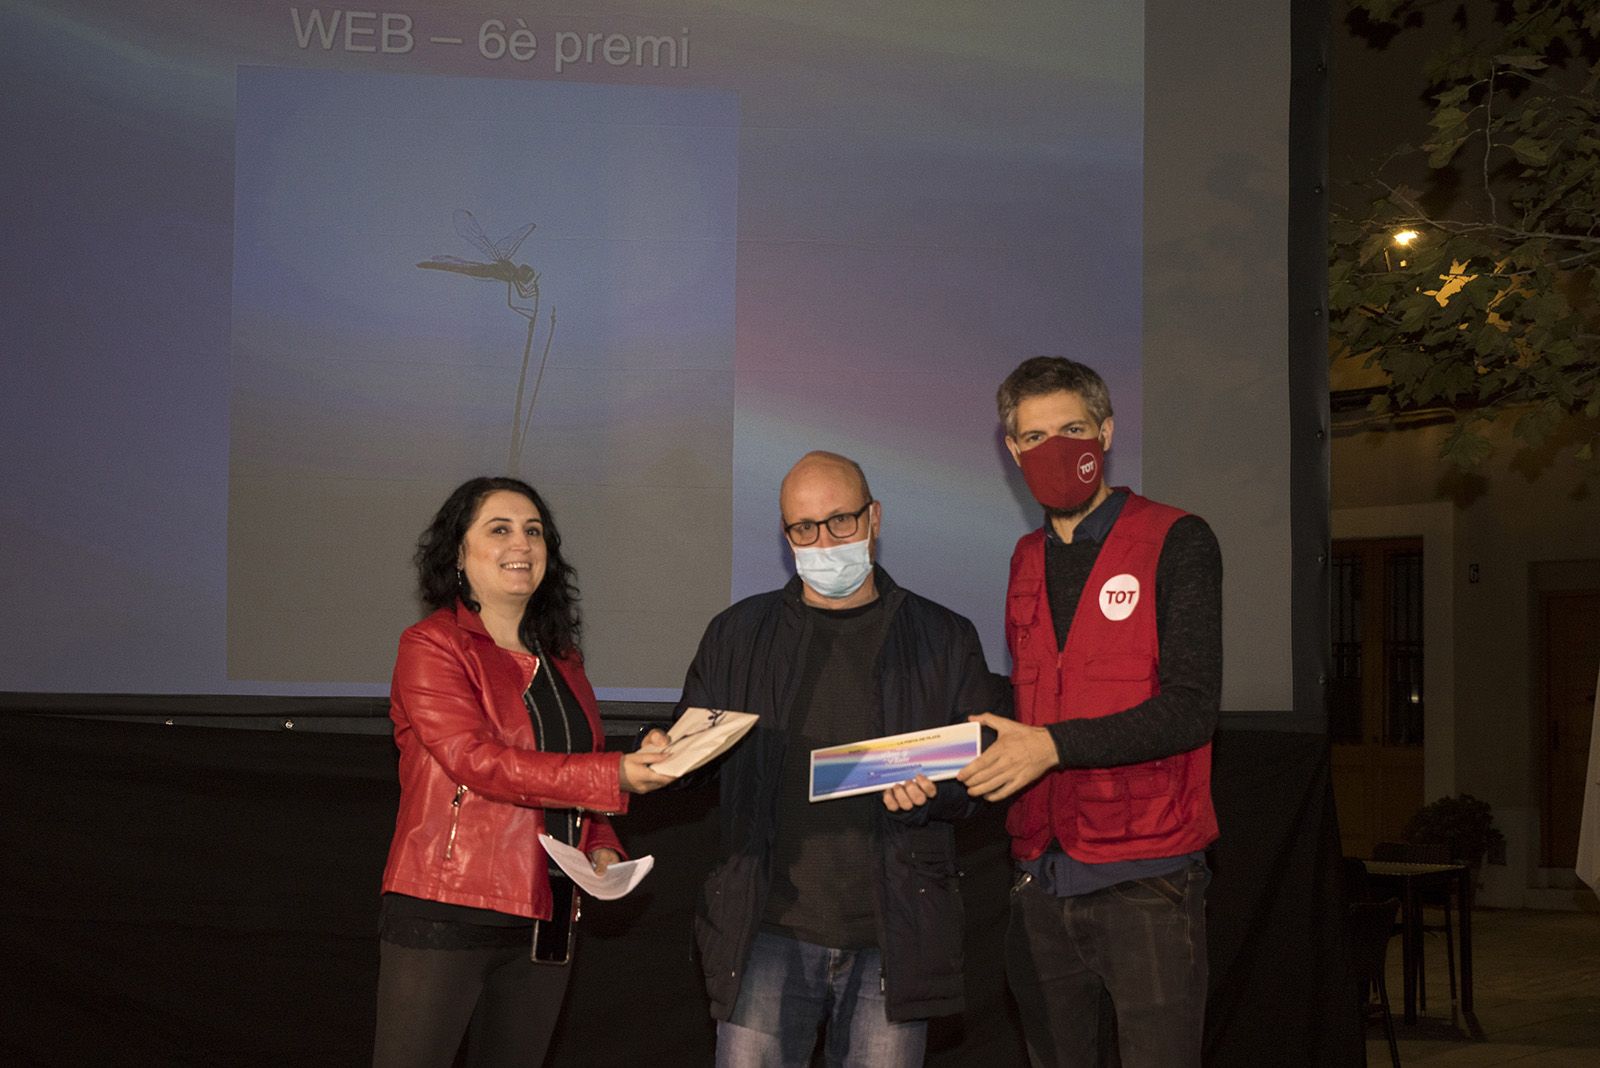 Jordi Serrano 6é premi categoria web del TOT Fotoportada 2021. Foto: Bernat Millet.